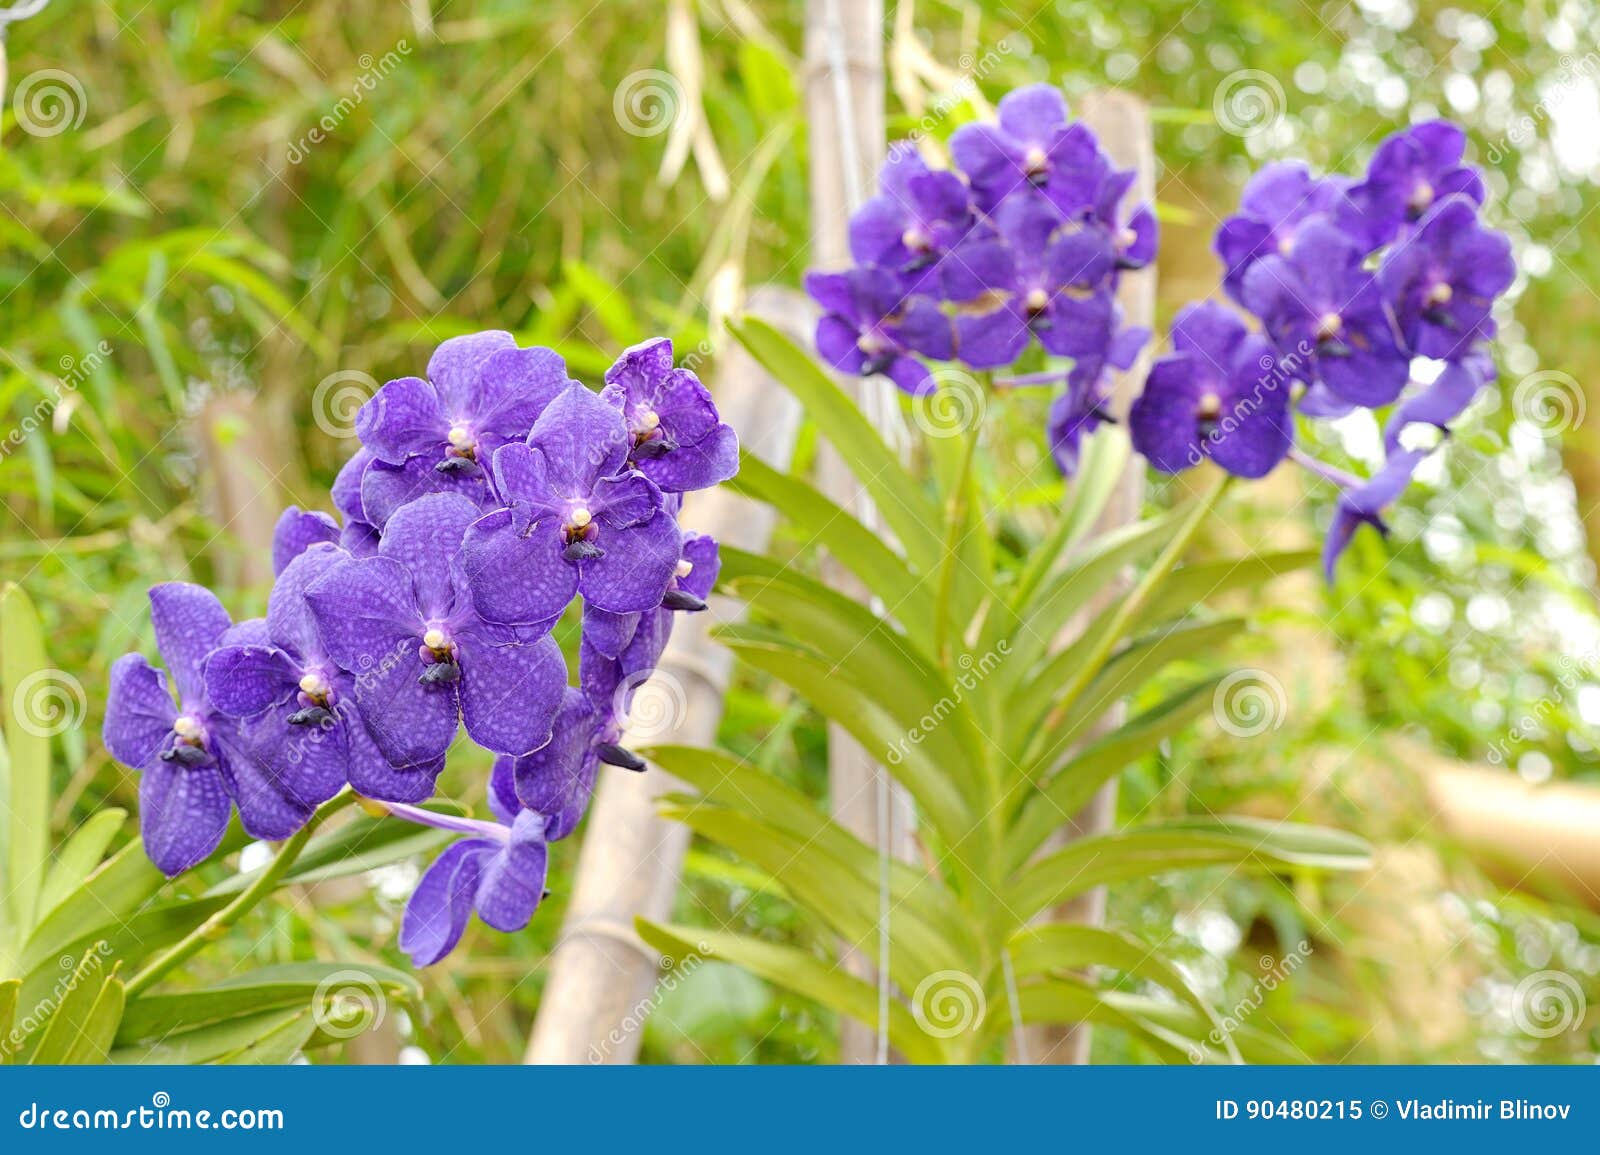 Grandes Fleurs Violettes D'orchidée Image stock - Image du serre,  floraison: 90480215